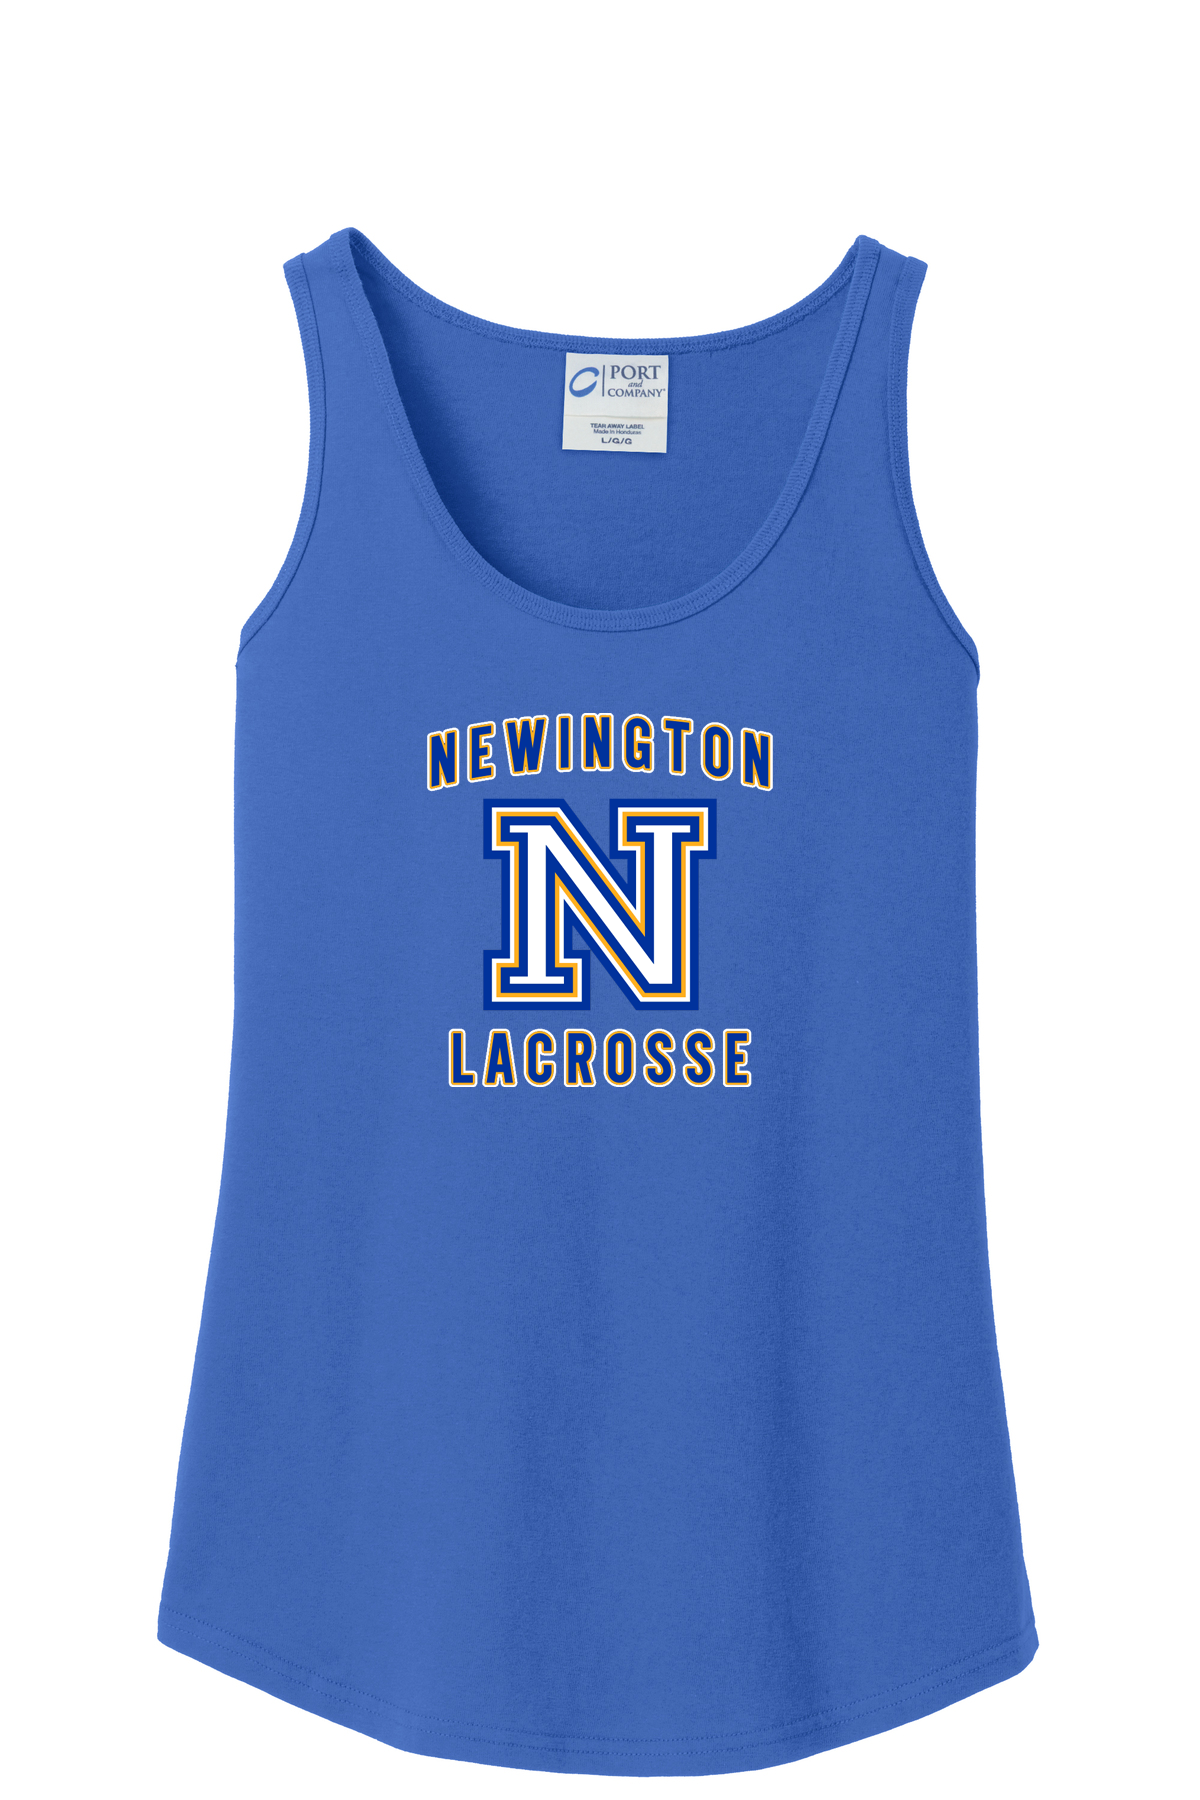 Newington Lacrosse Women's Tank Top